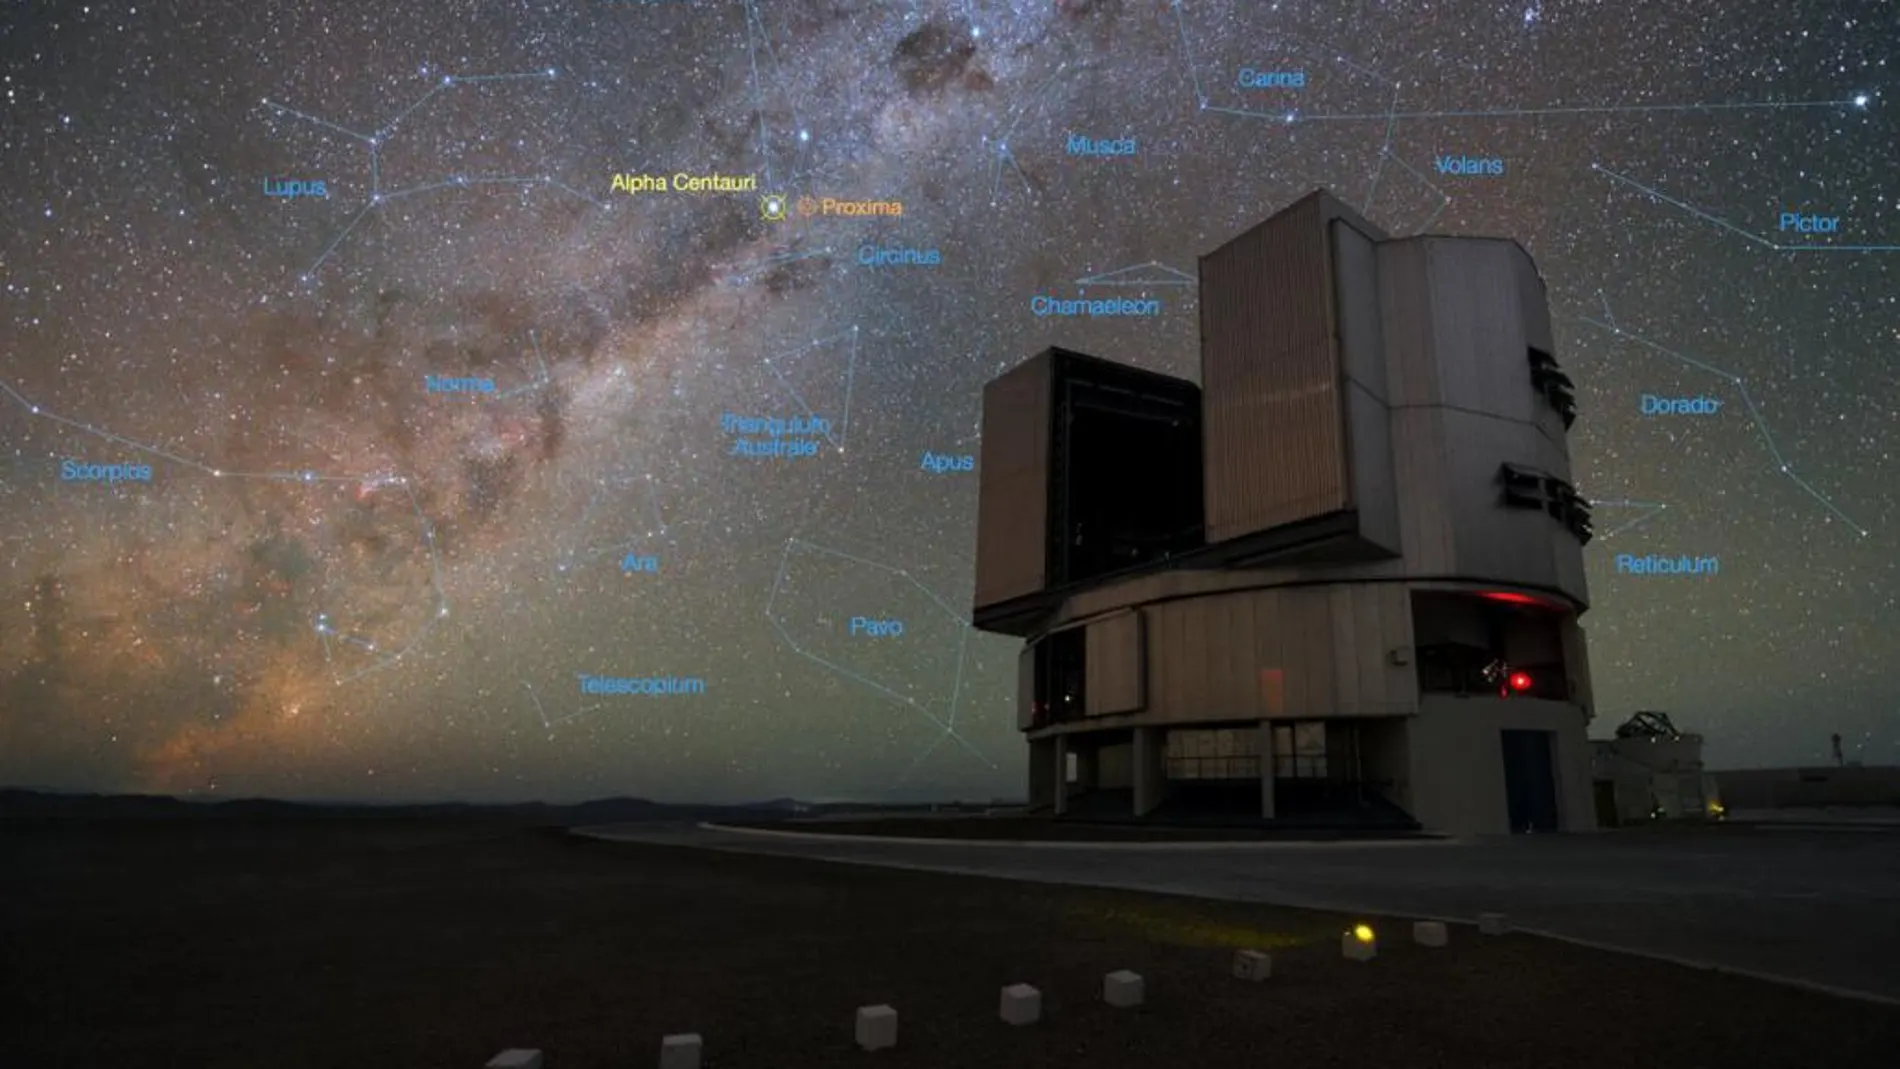 El VLT (Very Large Telescope) y el sistema estelar Alfa Centauri